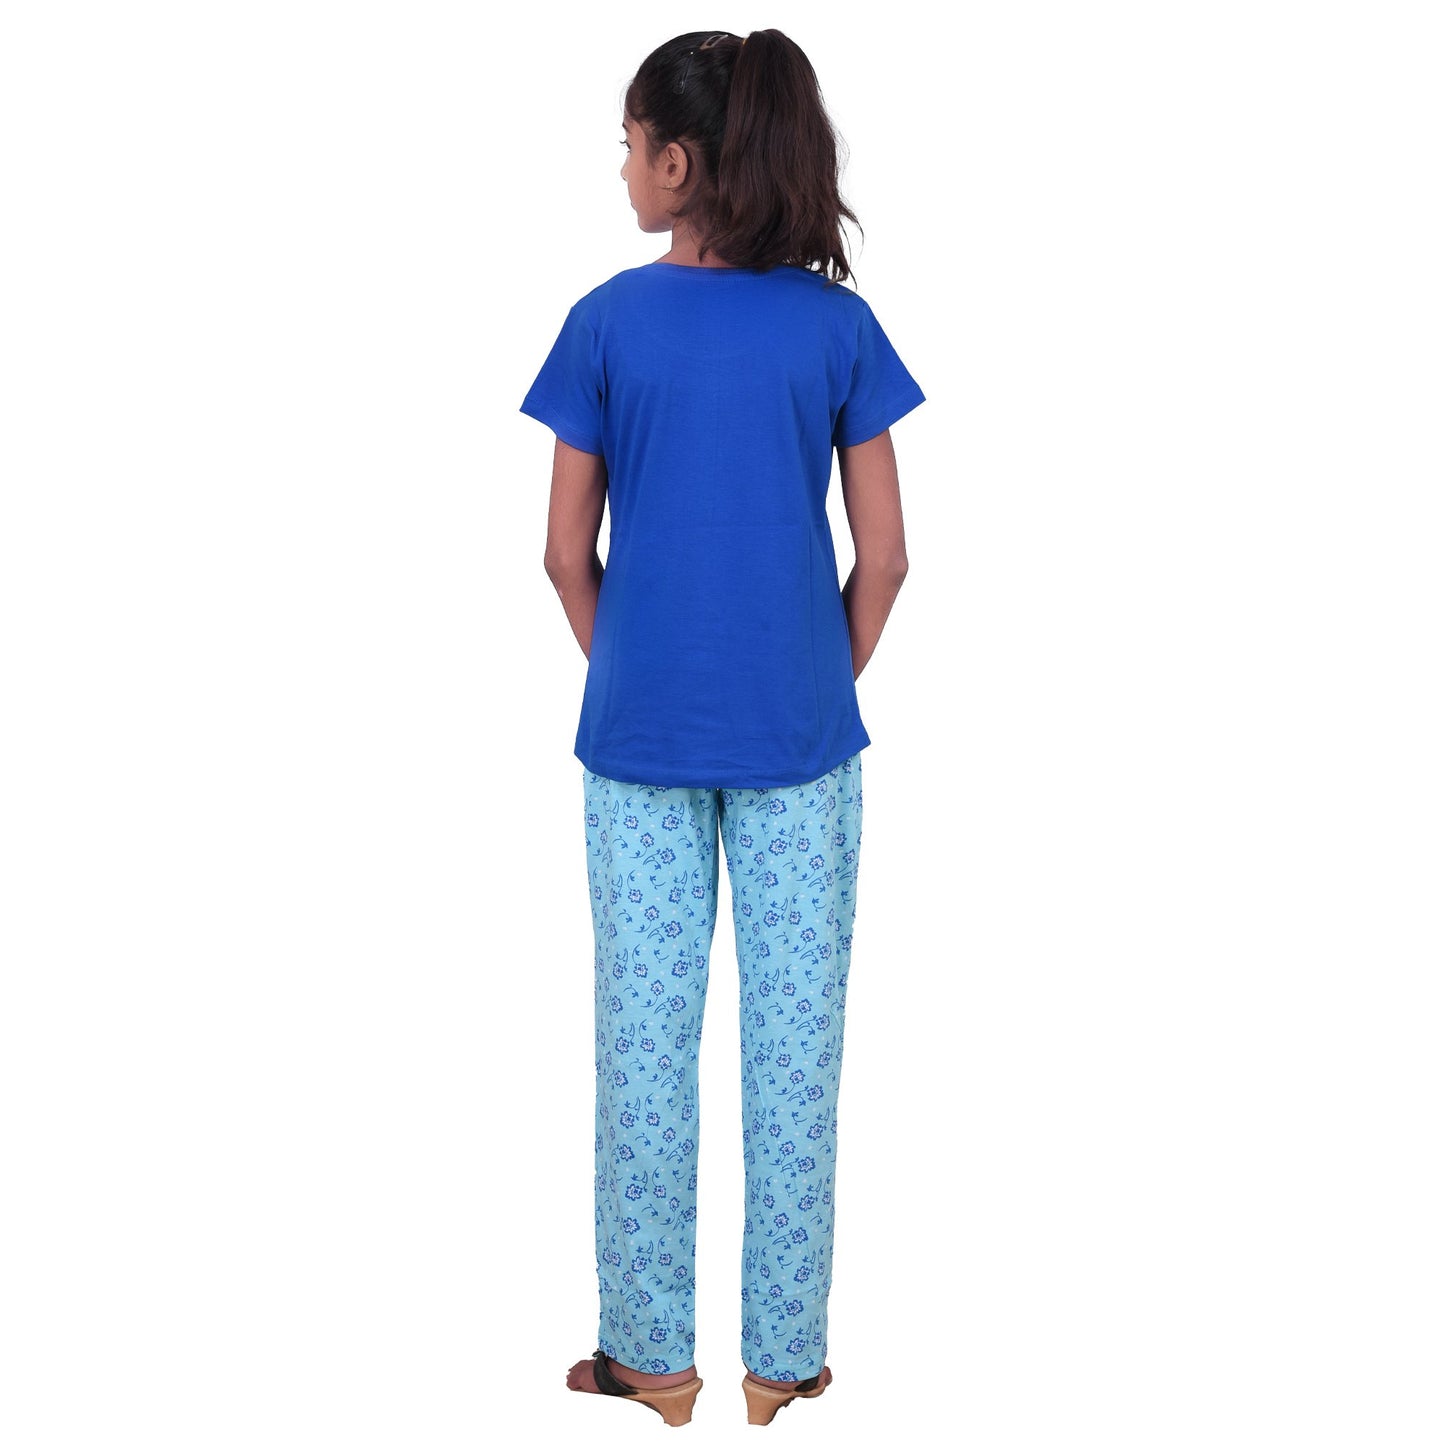 Girls Cotton Hosiery Printed Pyjamas Night Dress - Blue